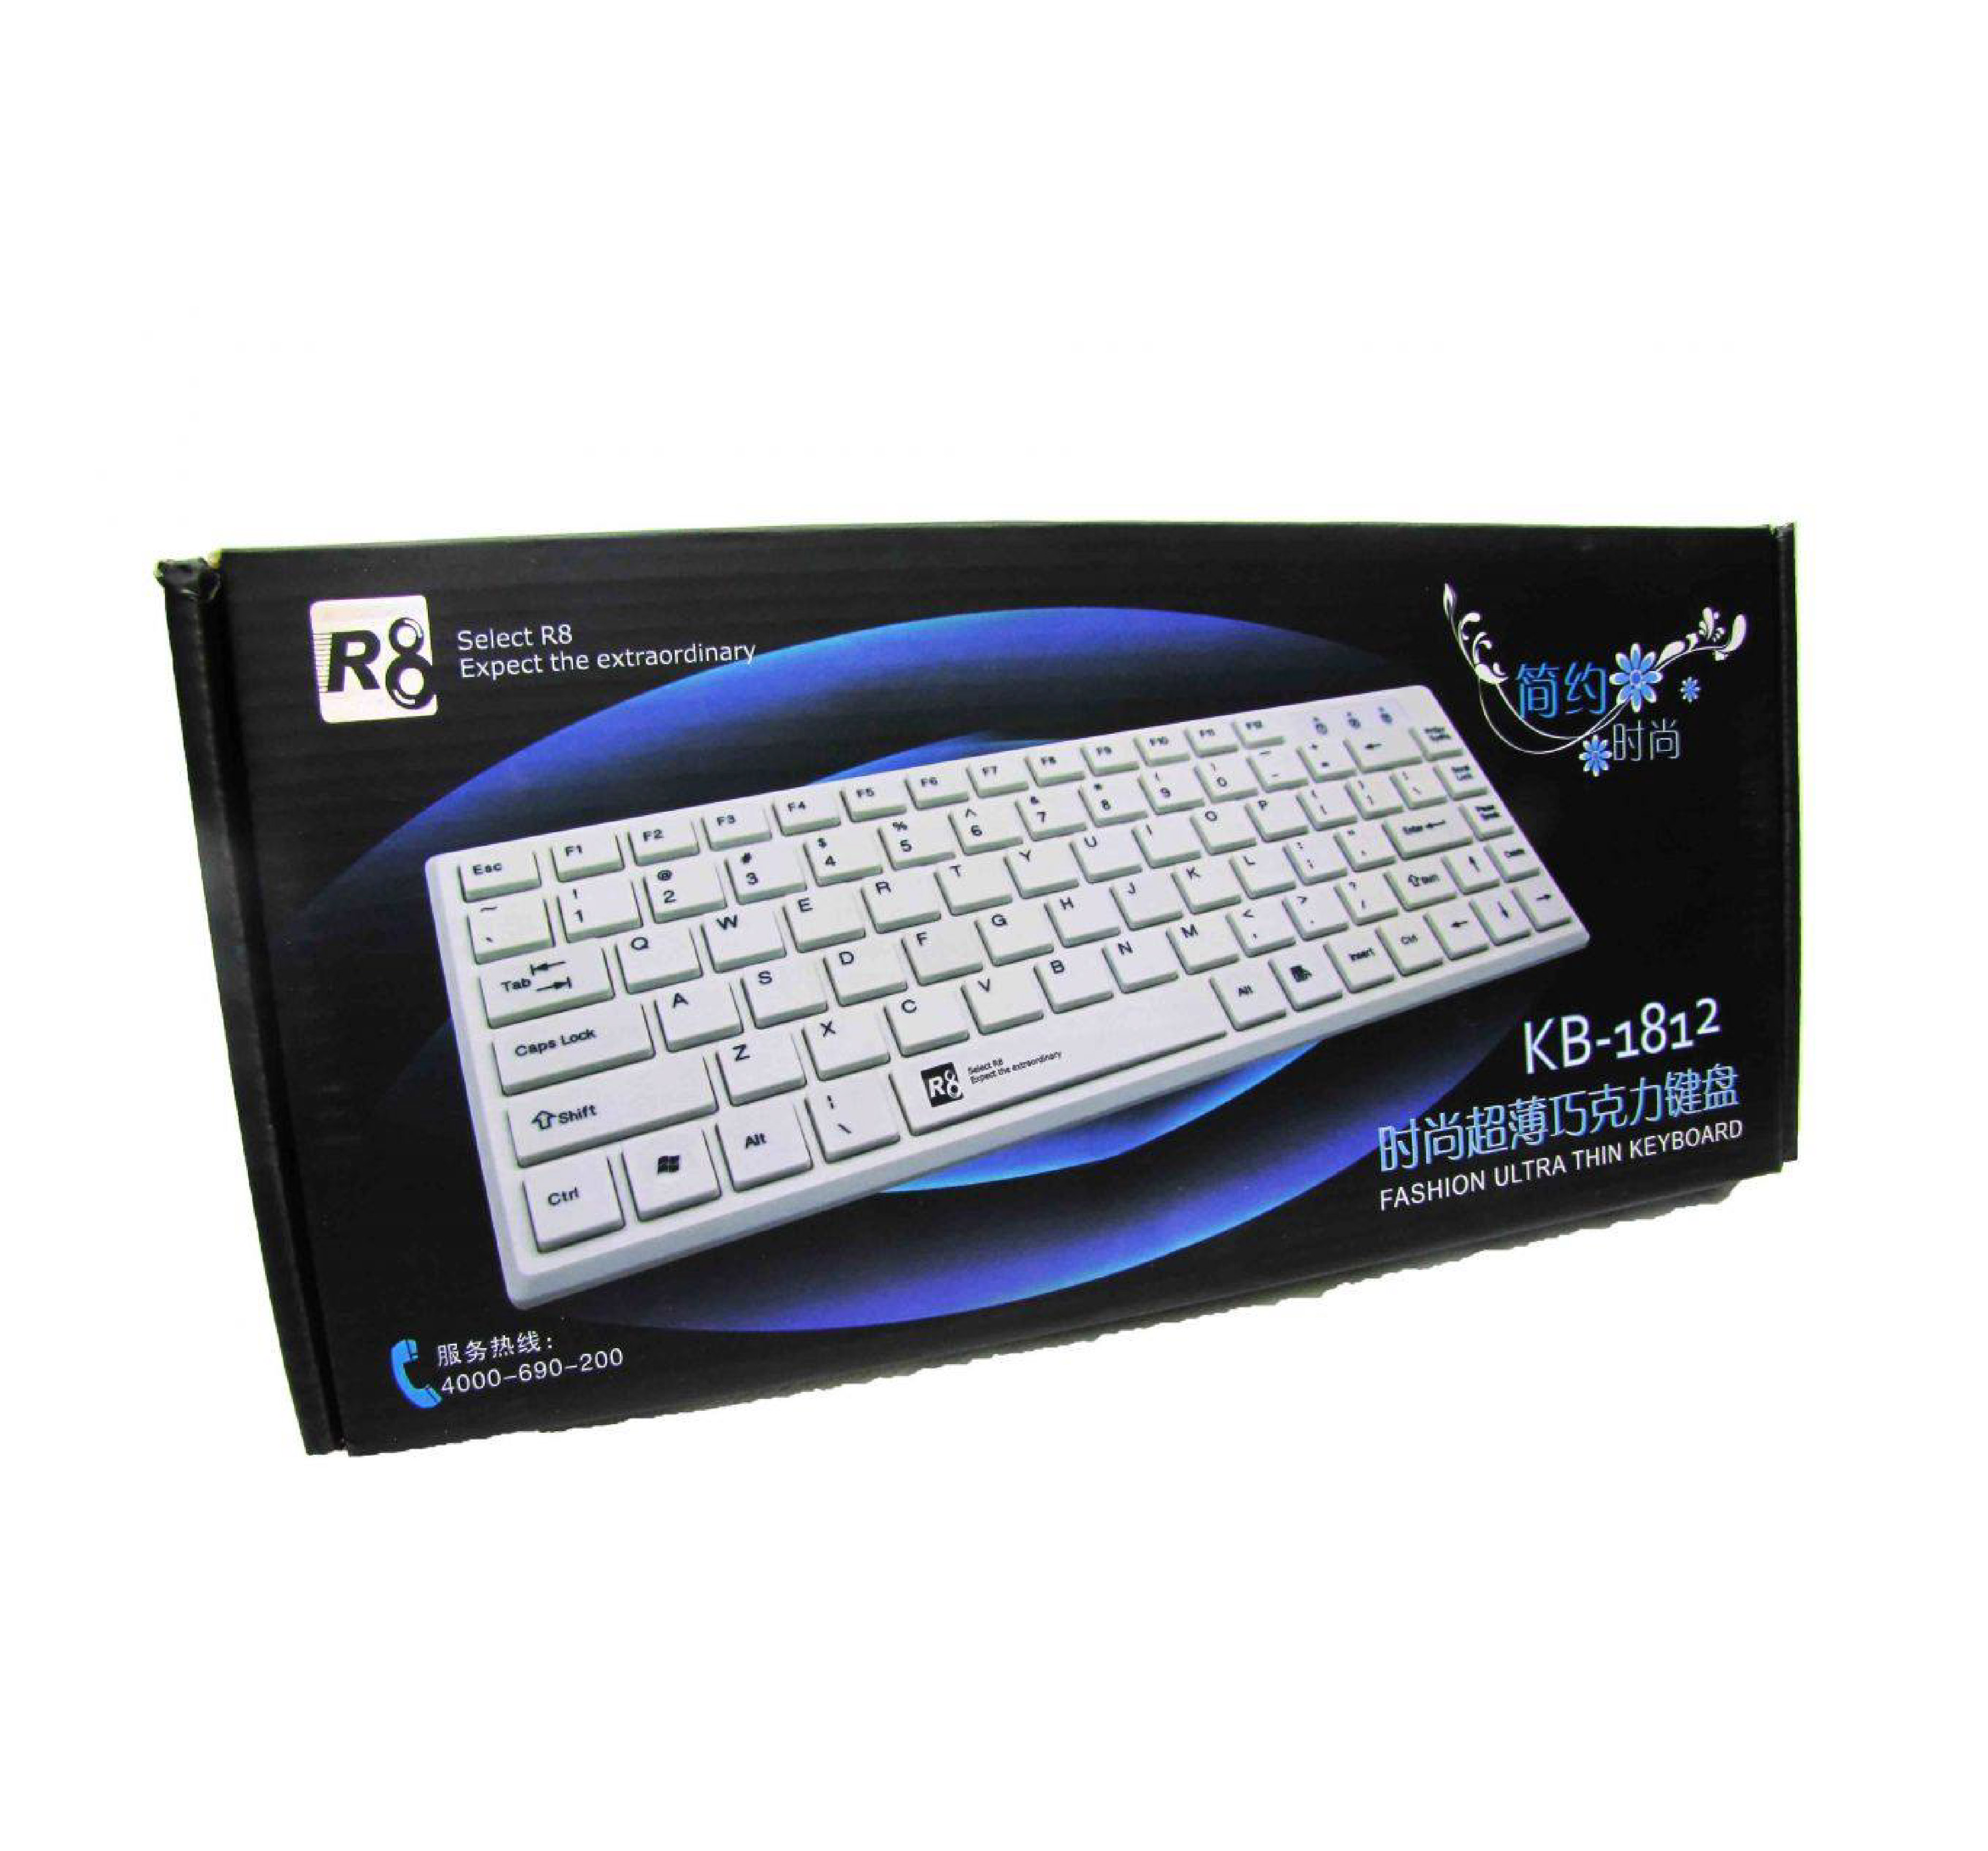 R8 1812 Keyboard